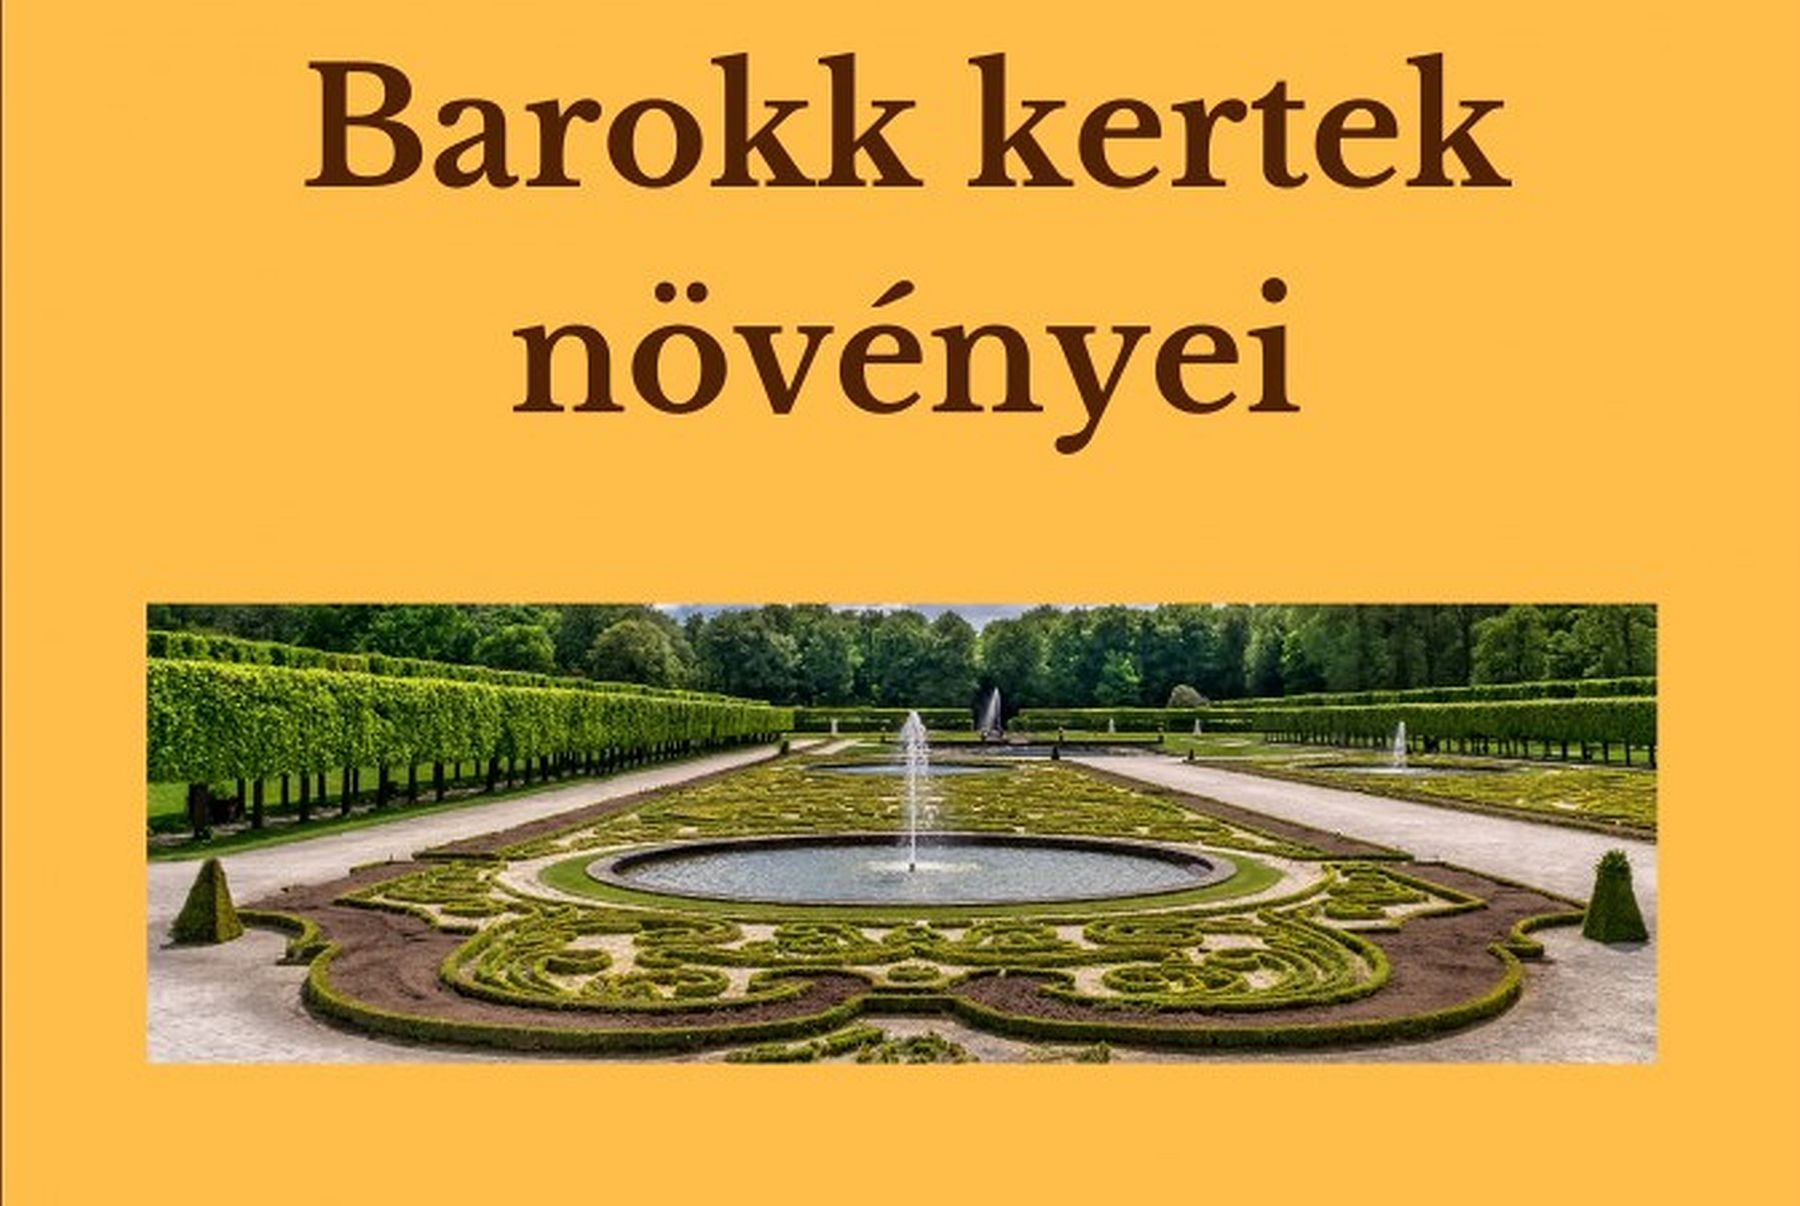 Barokk kertek növényei - Juhász-Szabó Csilla, kertészmérnök előadása hétfőn